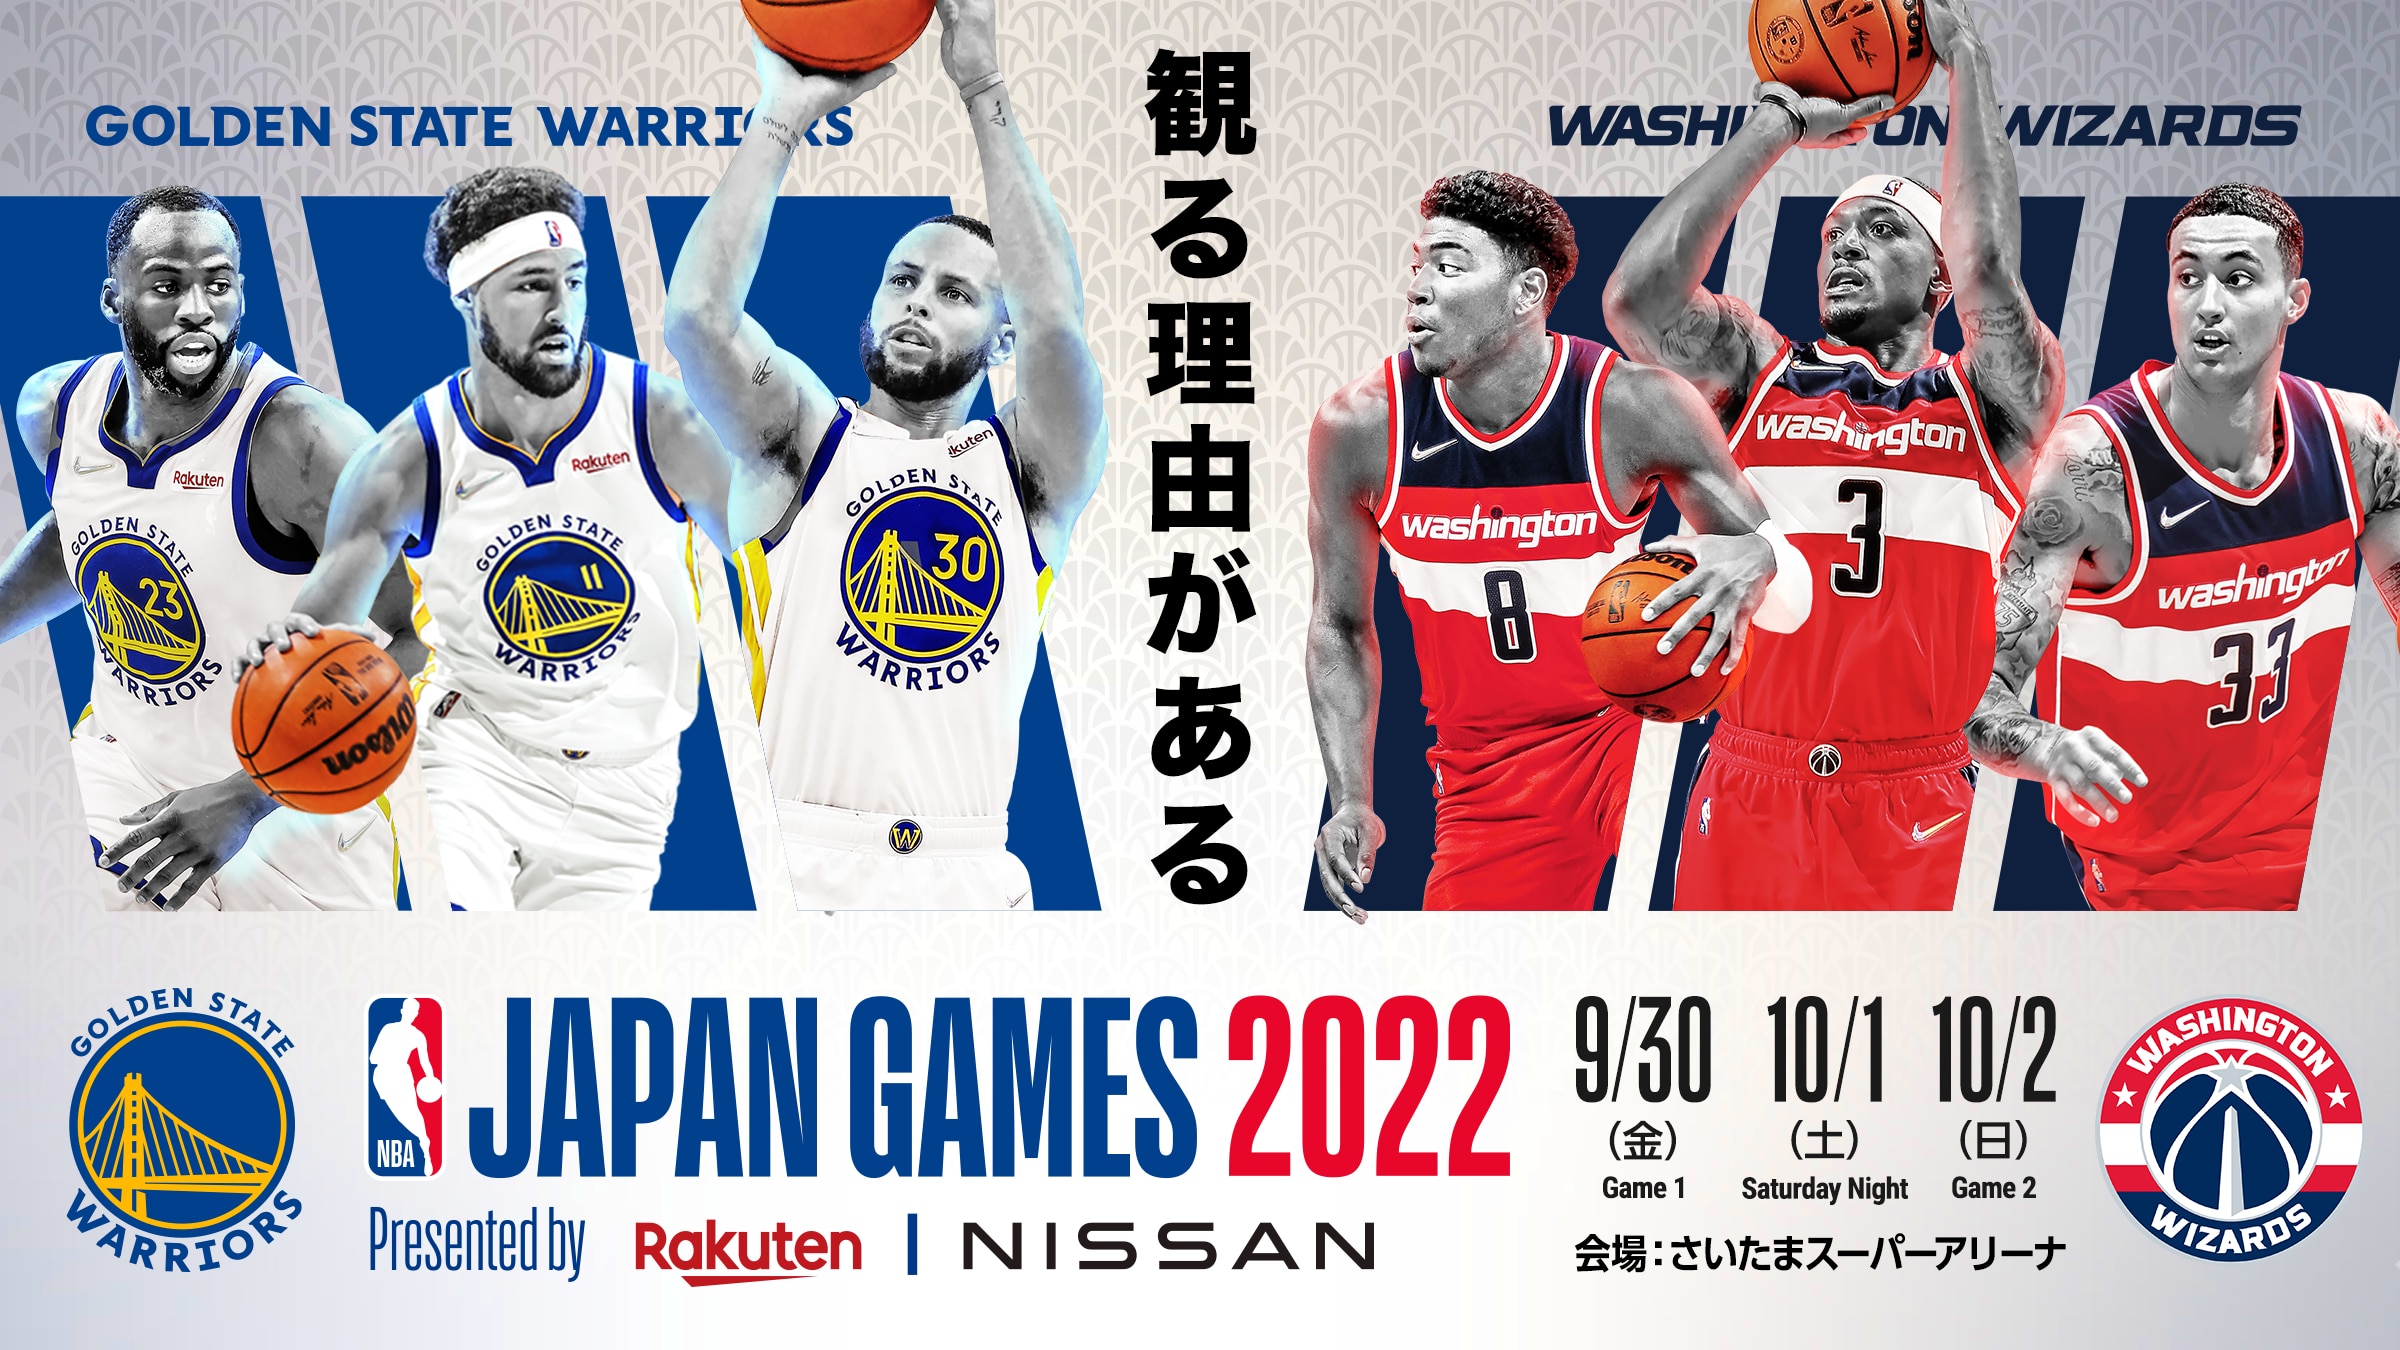 【まとめ】NBA Japan Games 2022 Presented by Rakuten & NISSAN